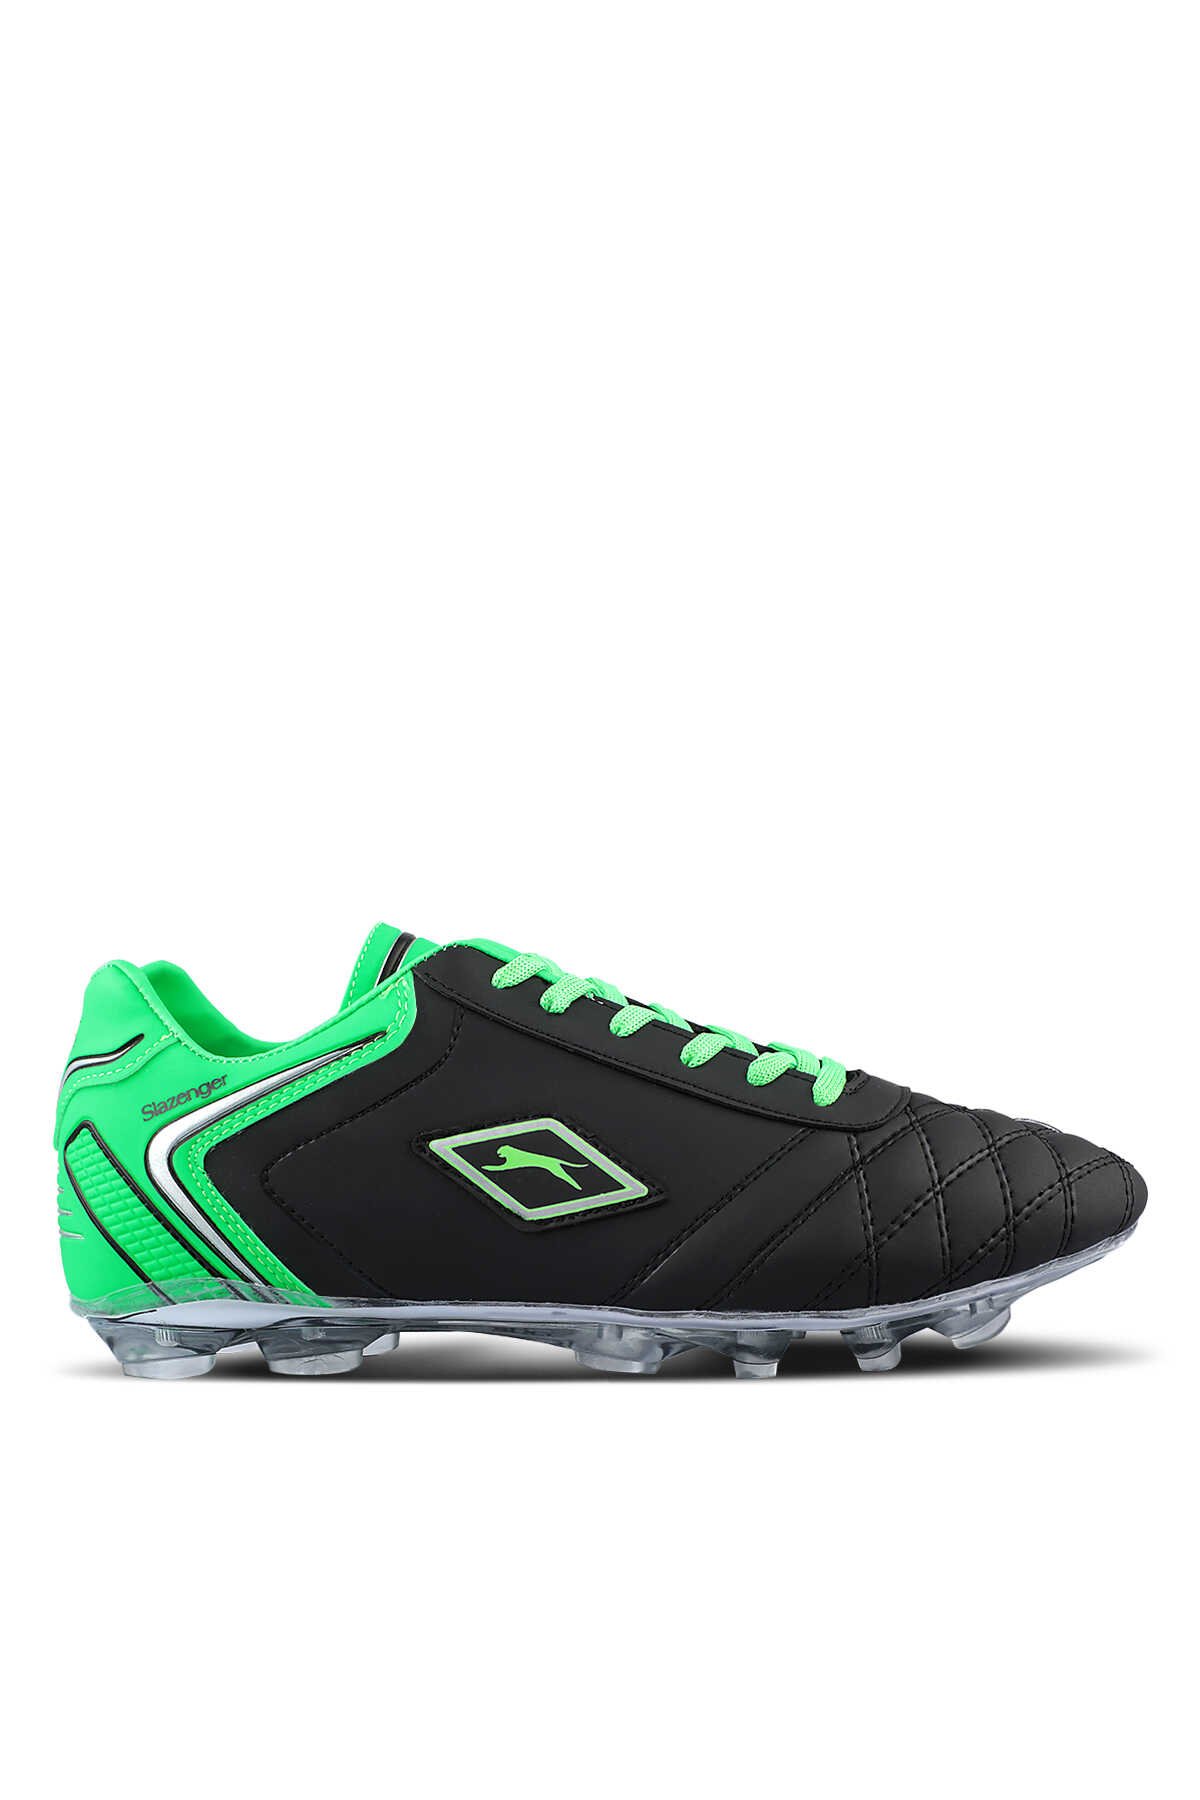 Slazenger - Slazenger HUGO KR Futbol Erkek Krampon Ayakkabı Siyah / Yeşil